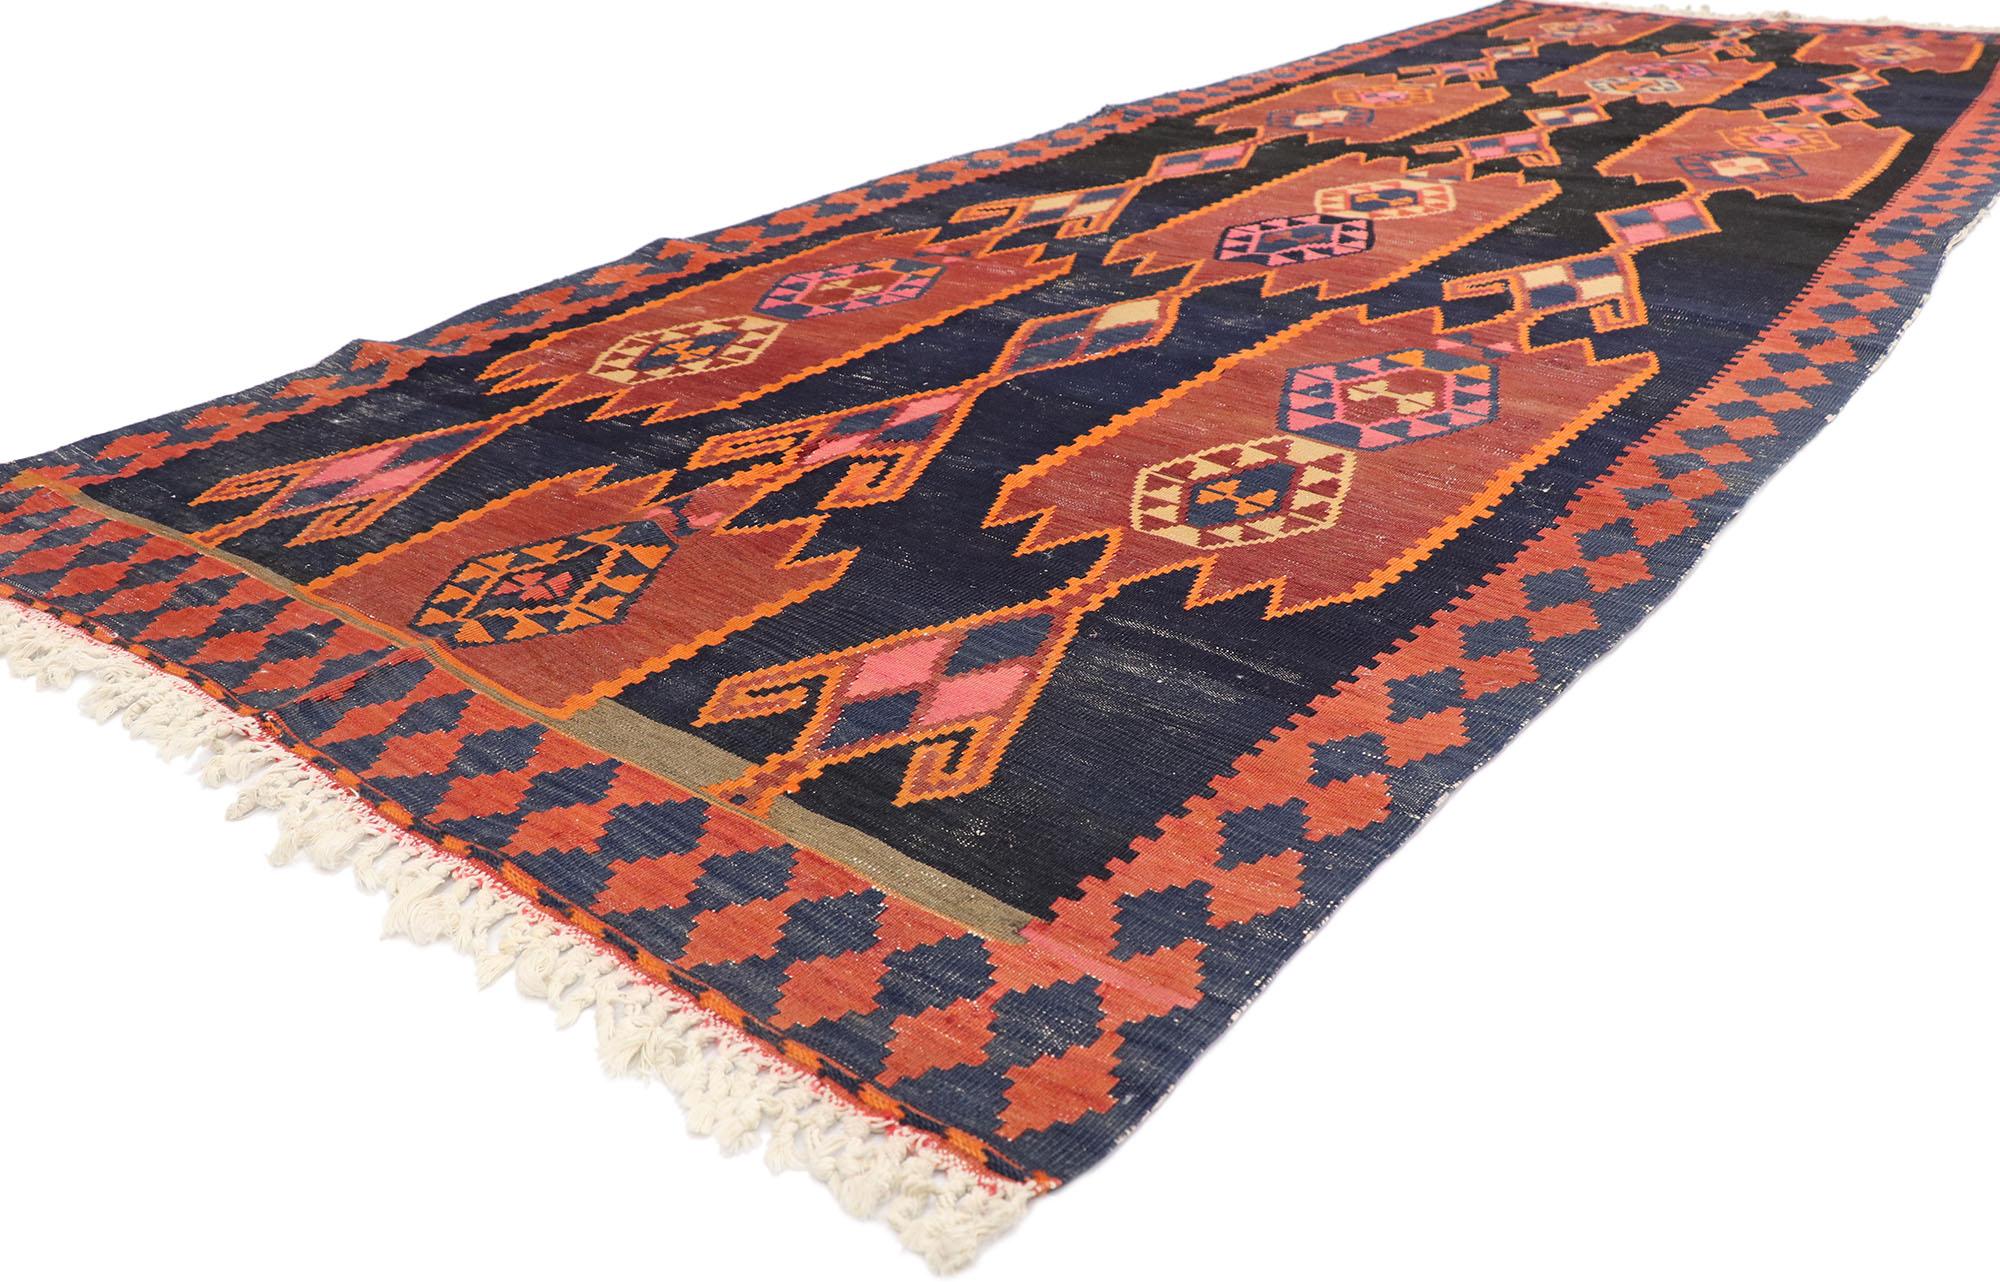 77967 Vintage Persian Azerbaijan Kilim Rug, 04'09 x 13'08. Chef-d'œuvre de l'art textile, ce tapis kilim persan azerbaïdjanais en laine tissé à la main est issu du riche patrimoine du nord-ouest de l'Iran. Immergez votre espace dans un style